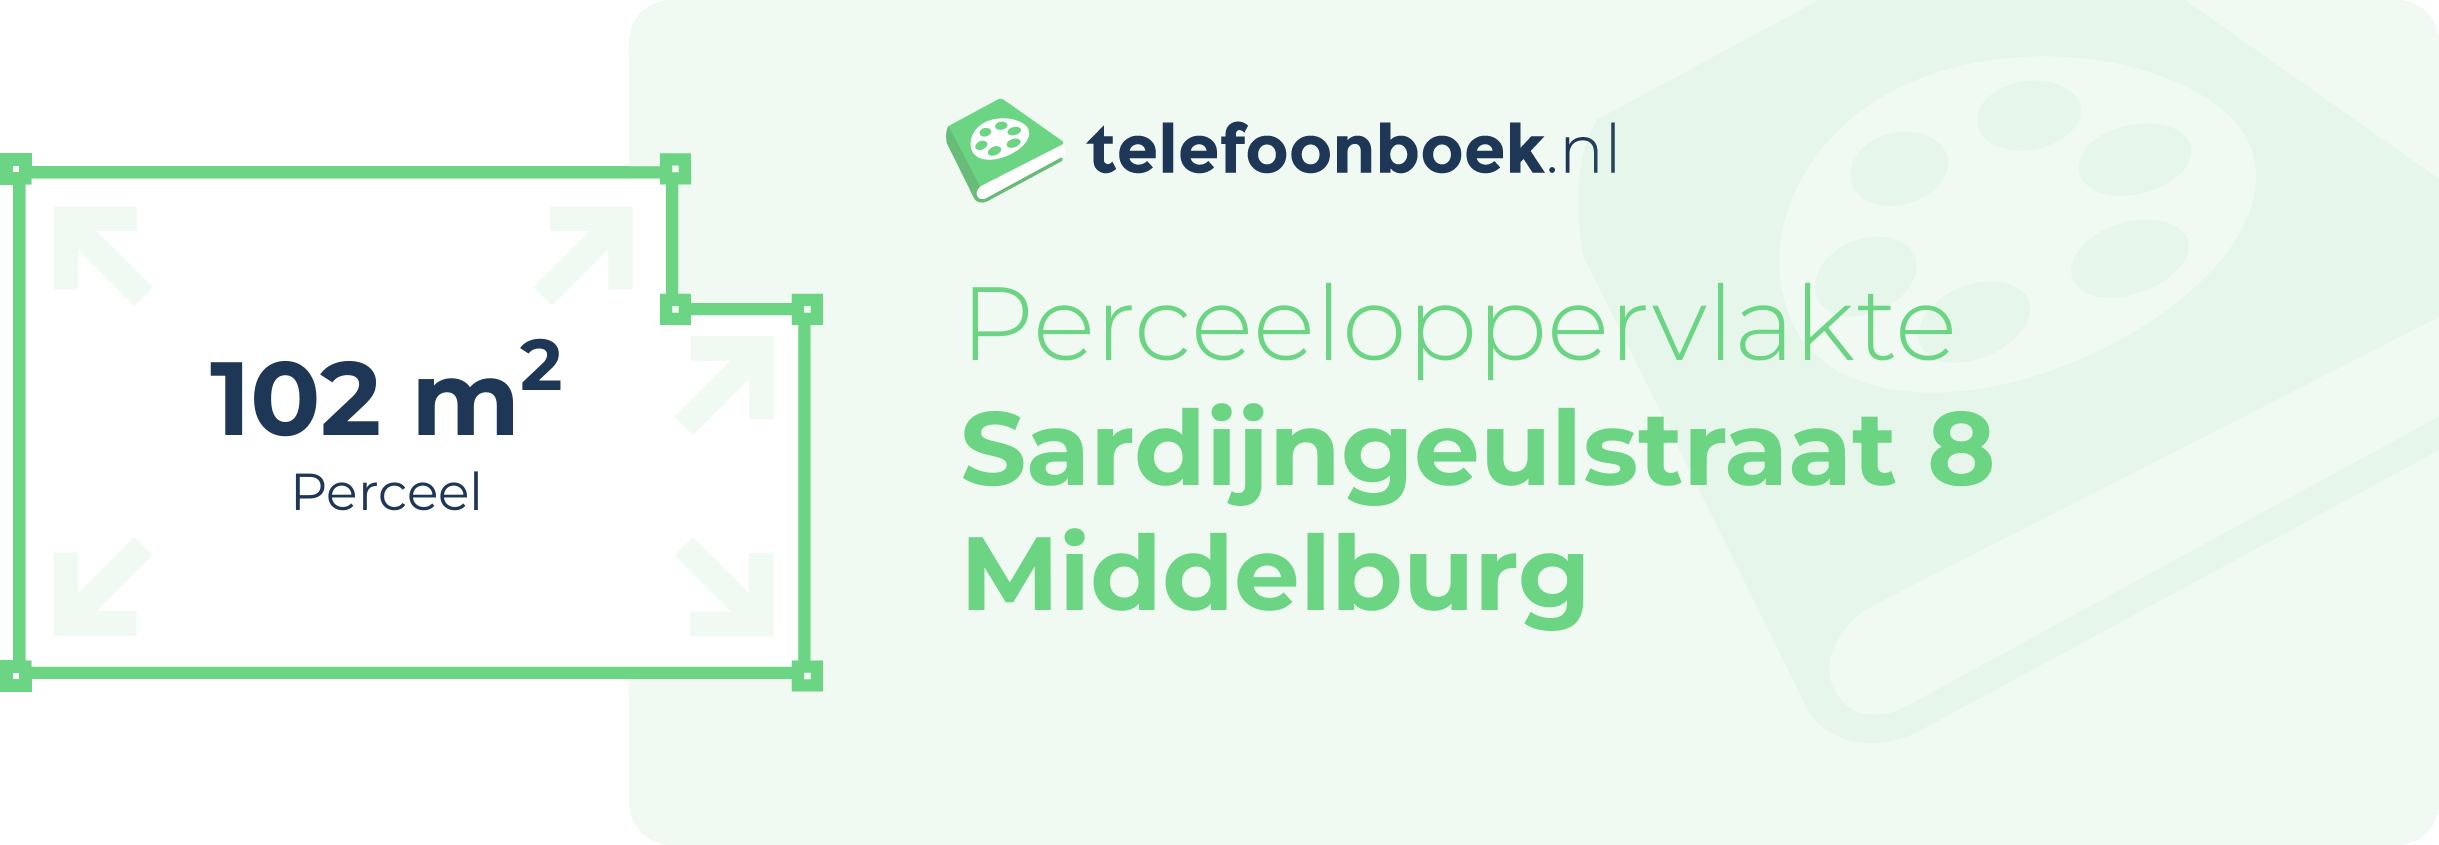 Perceeloppervlakte Sardijngeulstraat 8 Middelburg